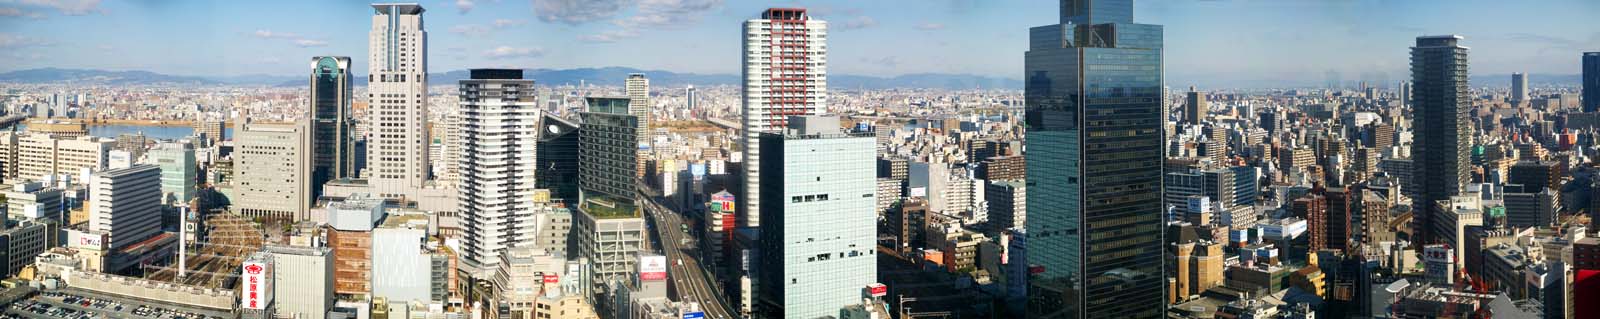 fotografia, material, livra, ajardine, imagine, proveja fotografia,Panorama de Osaka, edifcio de edifcio alto, rasto, A via expressa de Hanshin, apartamento de edifcio alto